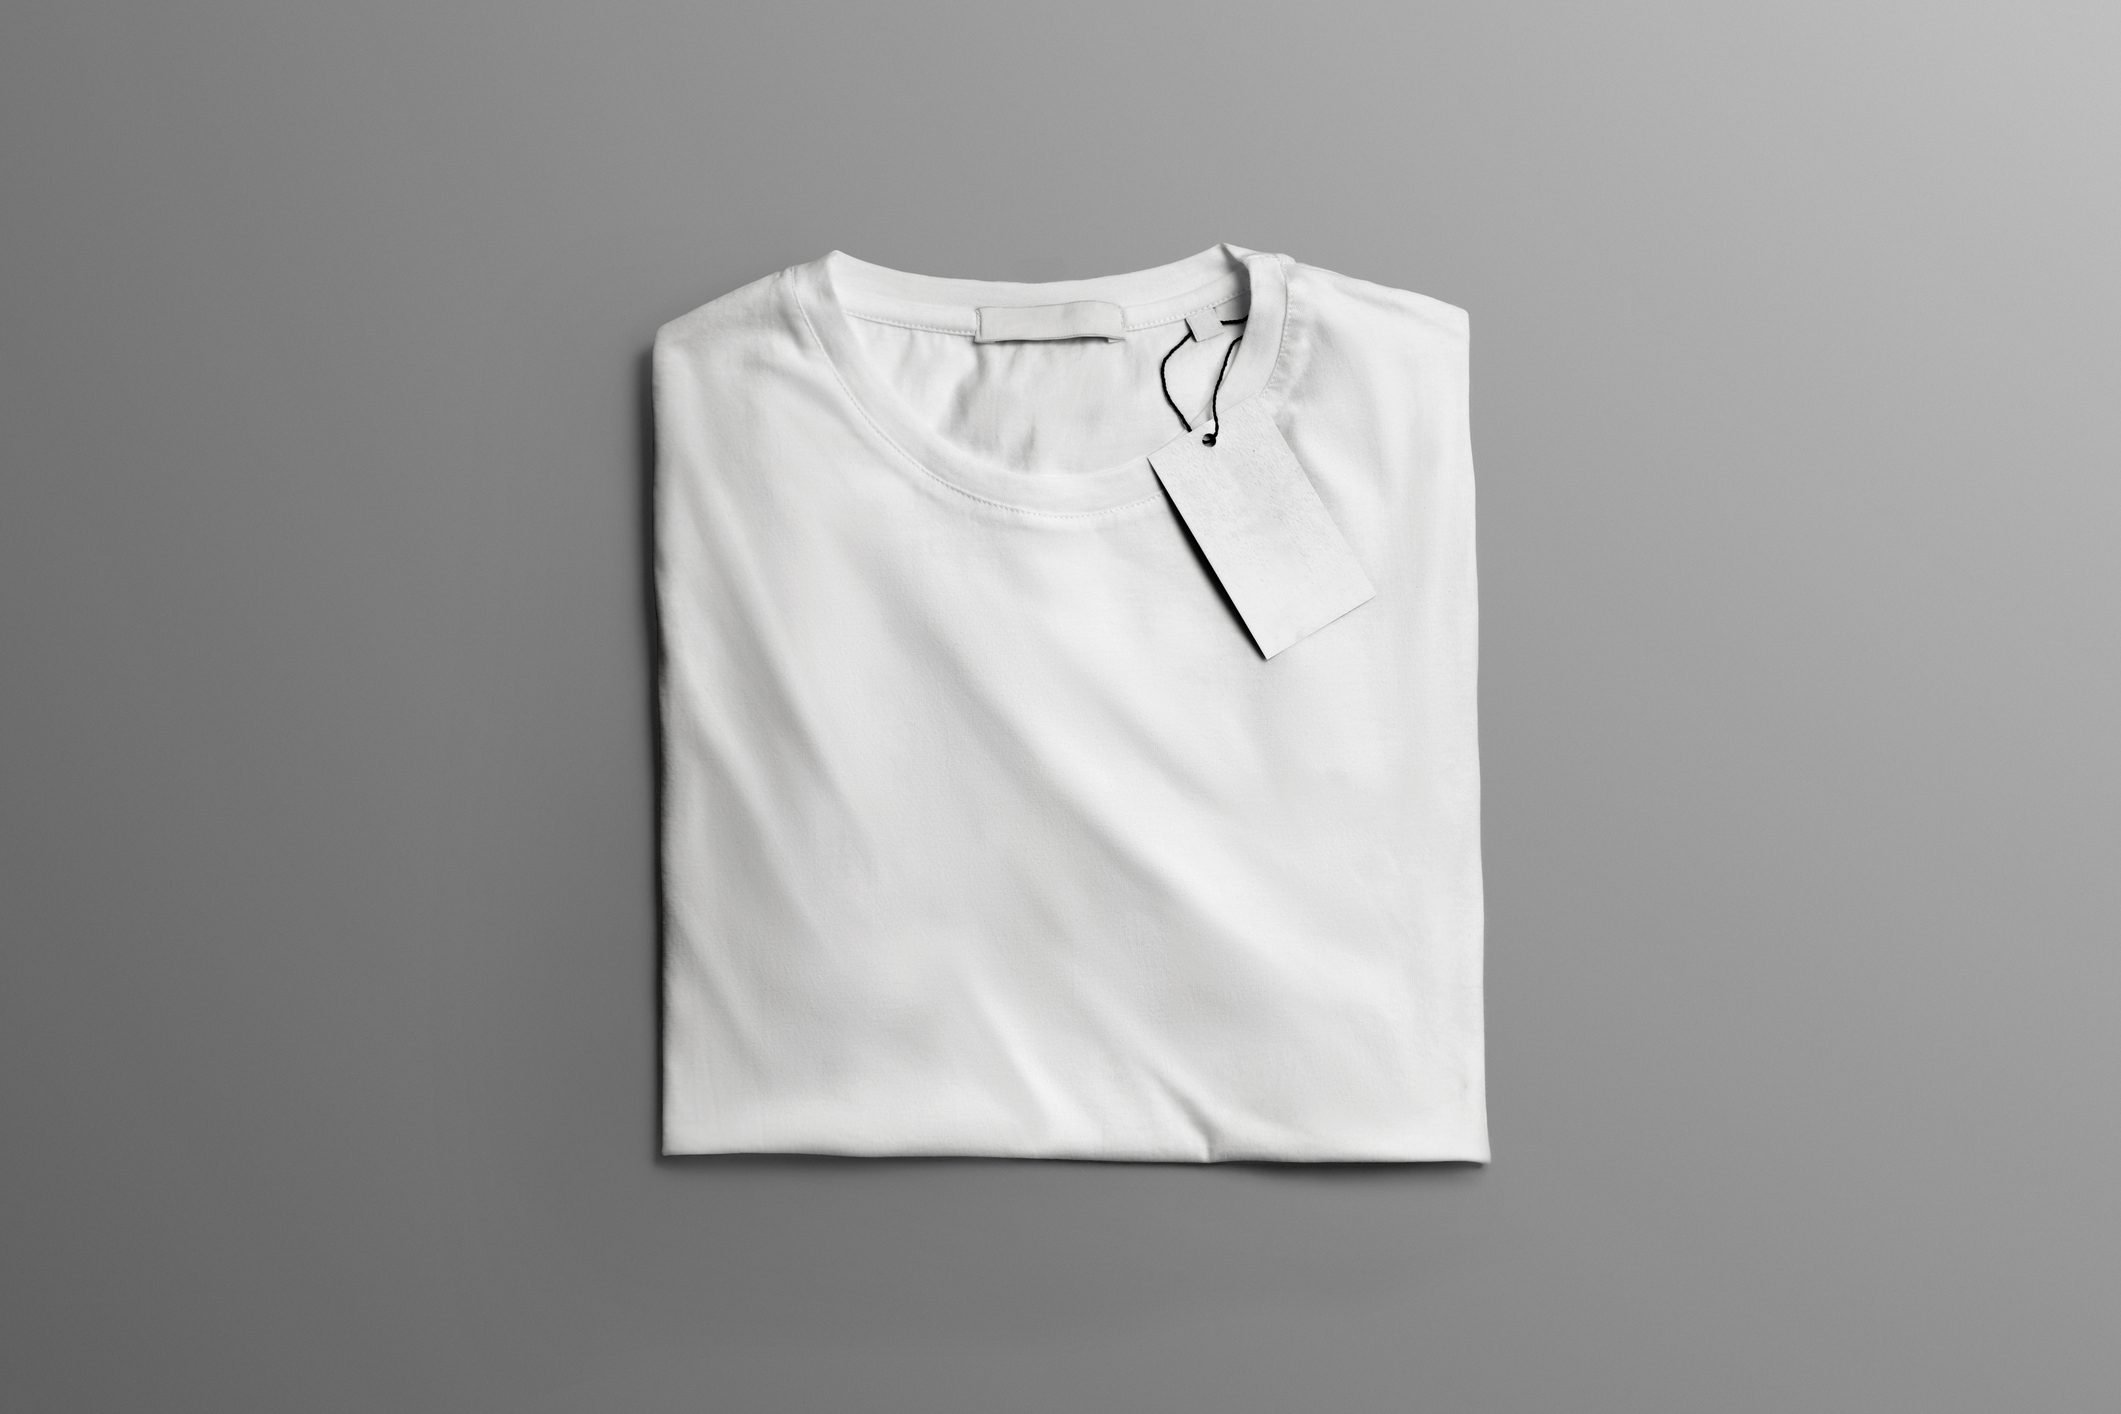 Свернутая футболка. Сложенная футболка. Белая футболка сложенная. Майка сложенная. Стопка белых футболок.